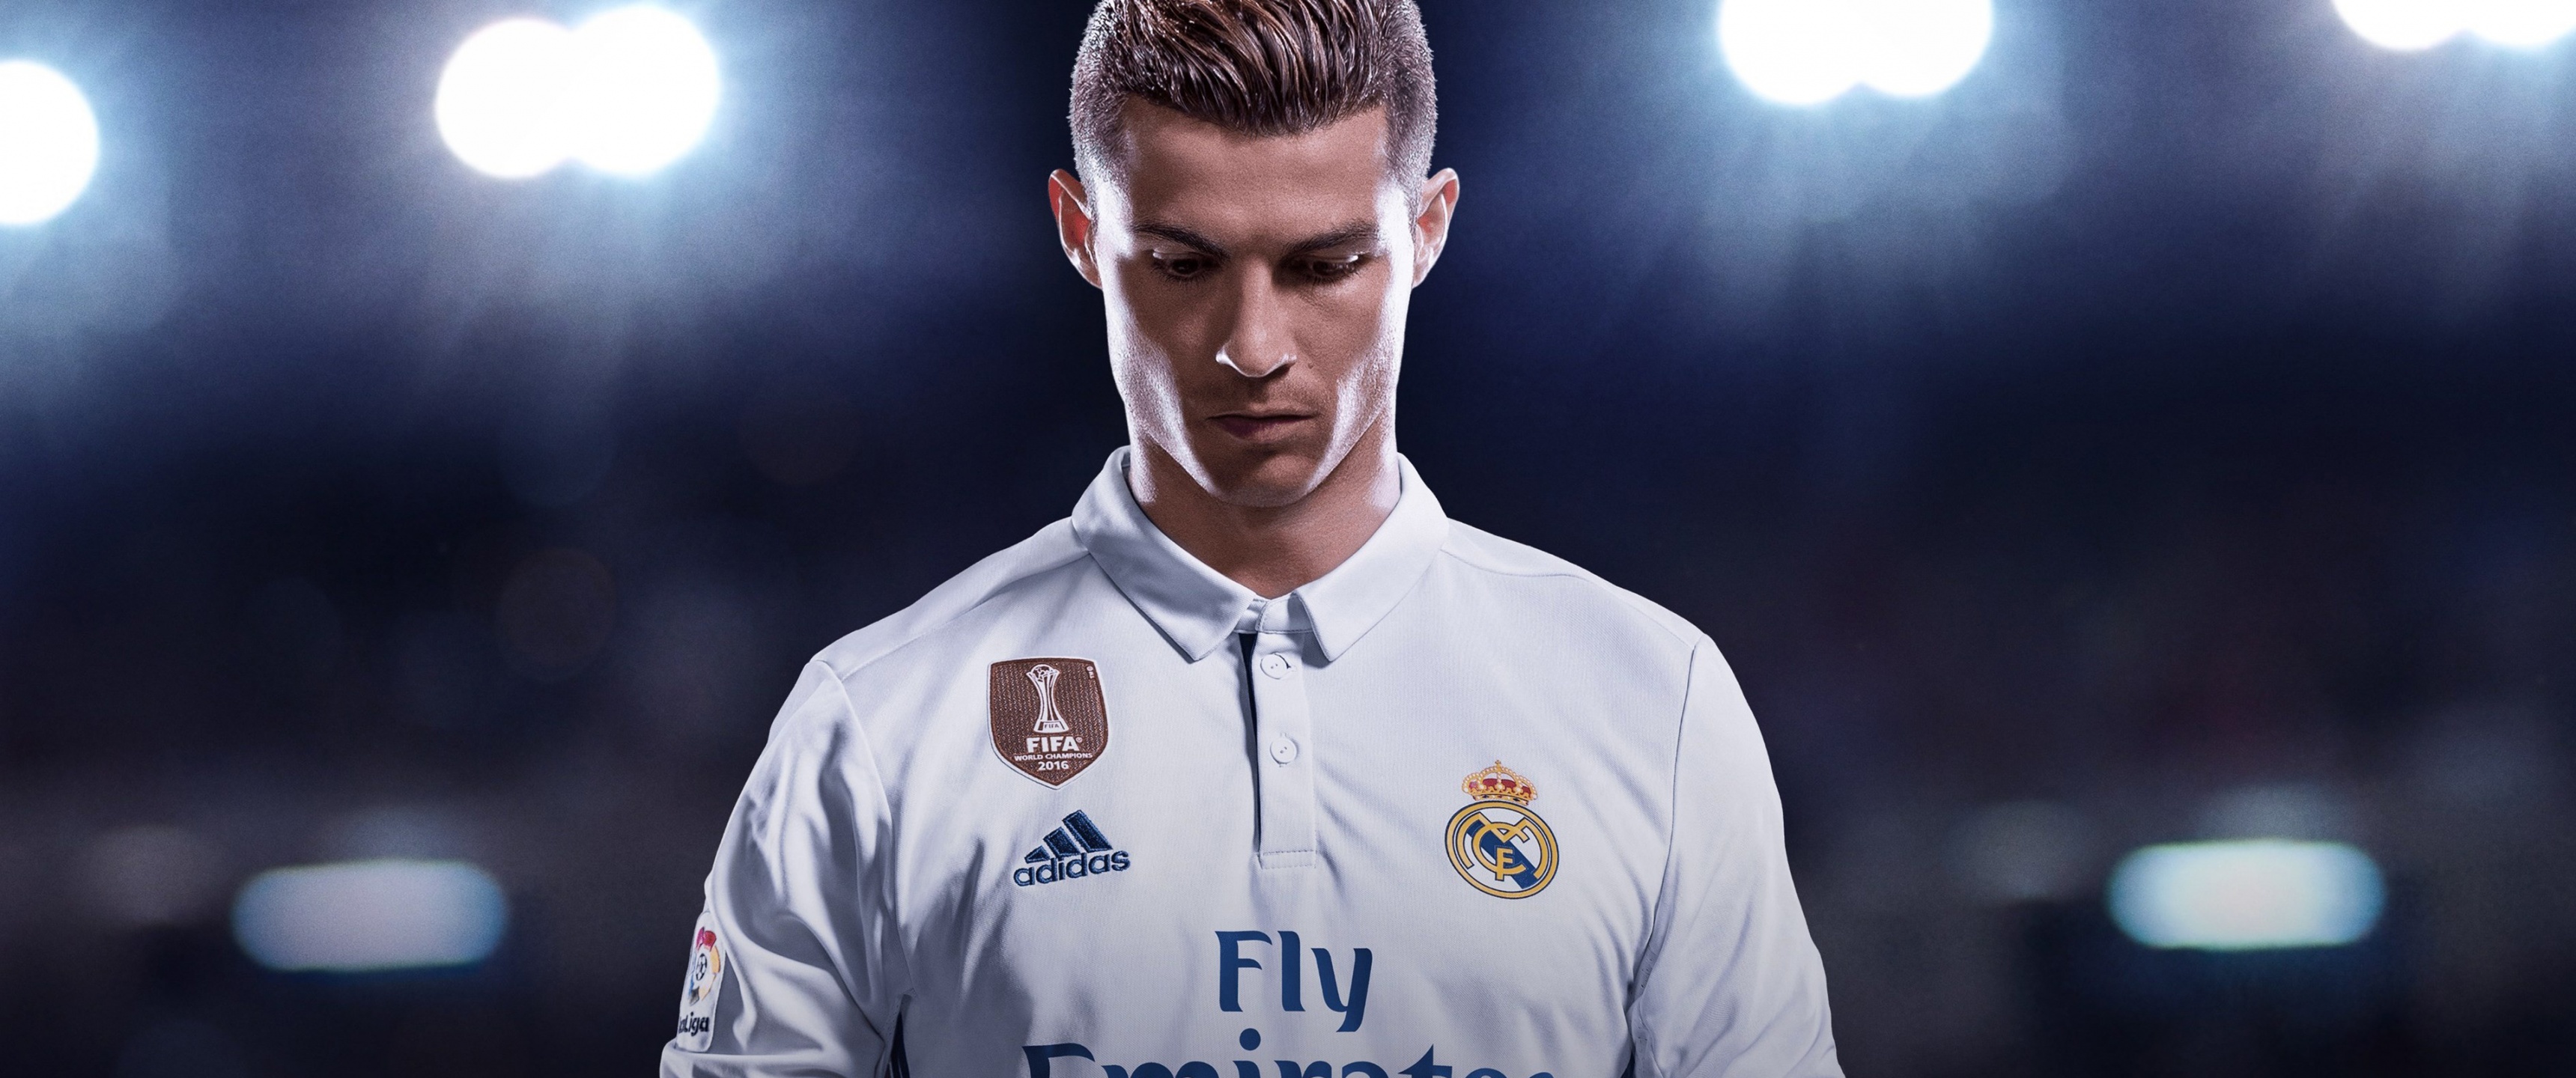 Wallpaper ID 432131  Sports Cristiano Ronaldo Phone Wallpaper  Portuguese Soccer 750x1334 free download